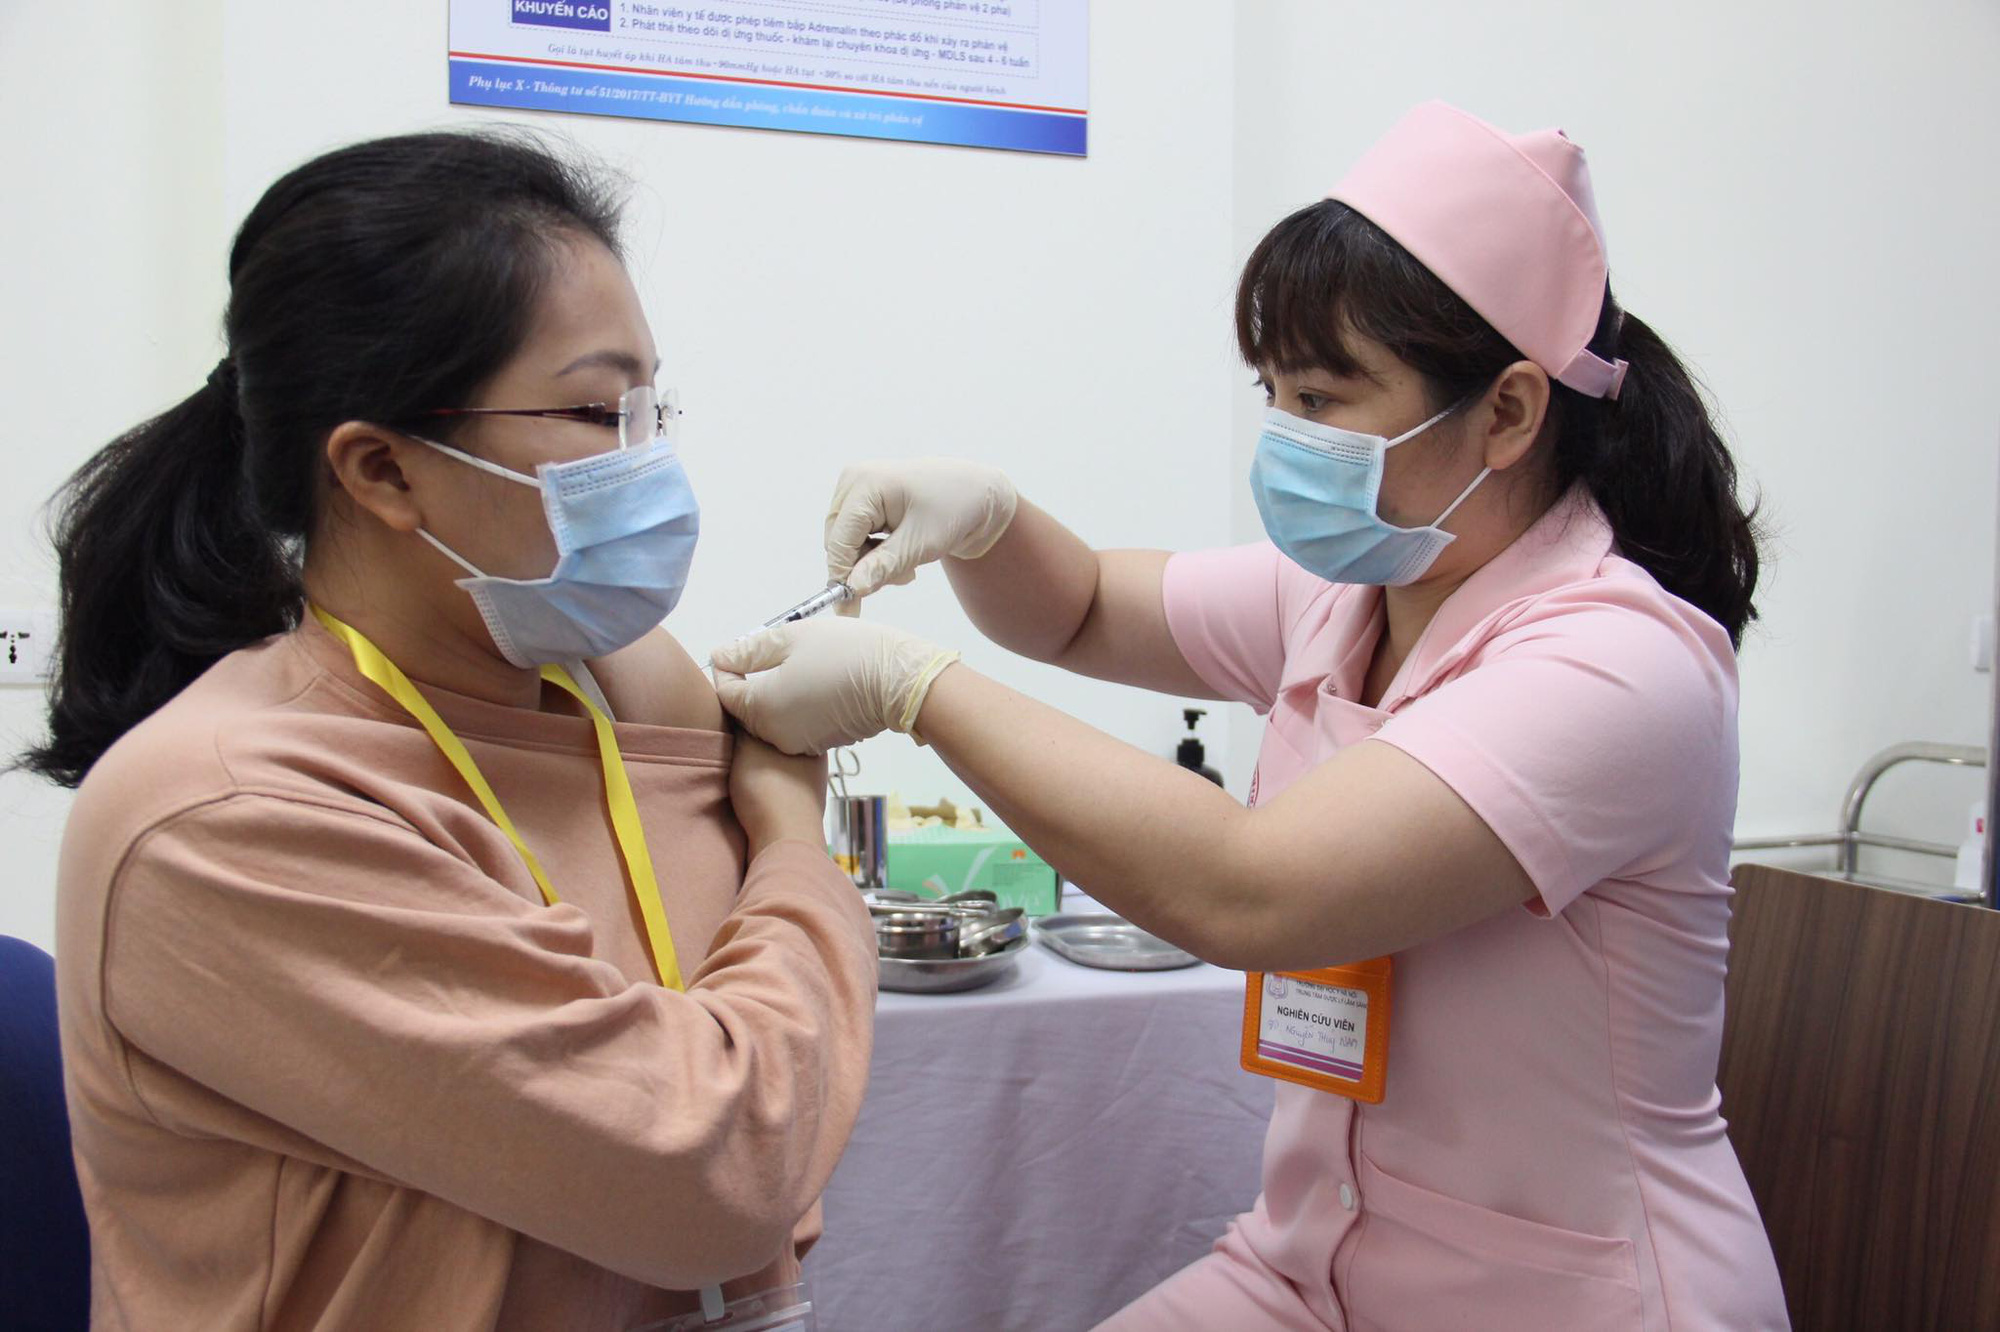 Tin vui vể vắc xin Covid-19 COVIVAC do Việt Nam sản xuất  - Ảnh 2.